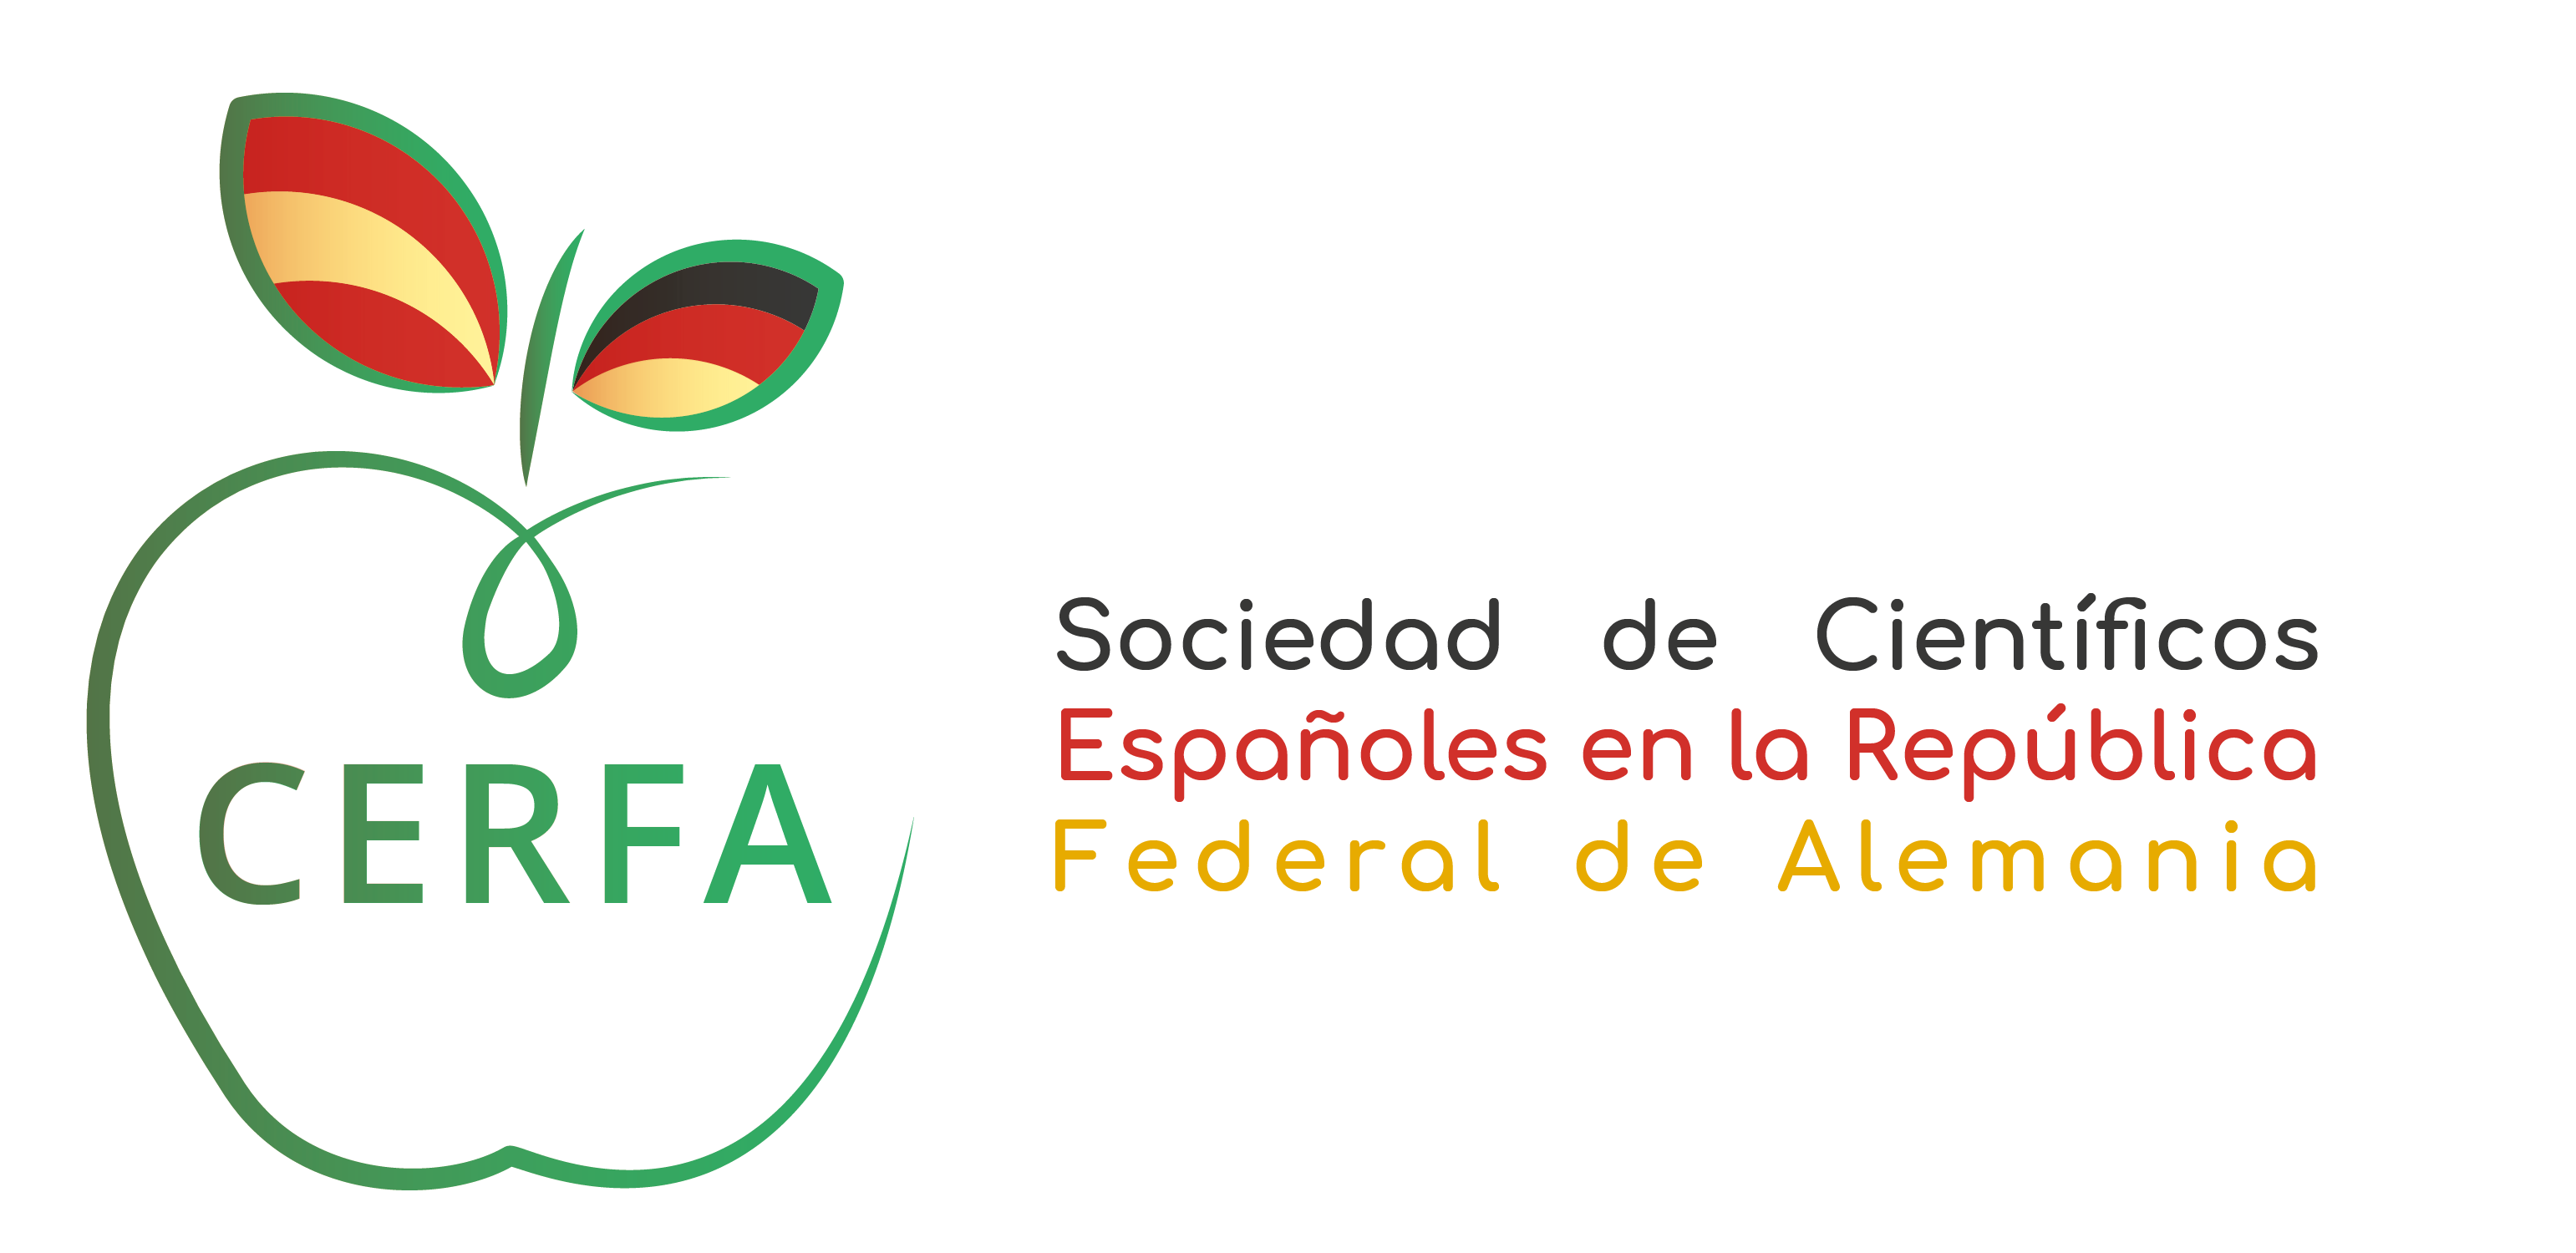 Sociedad de científicos españoles en la República Federal de Alemania CERFA